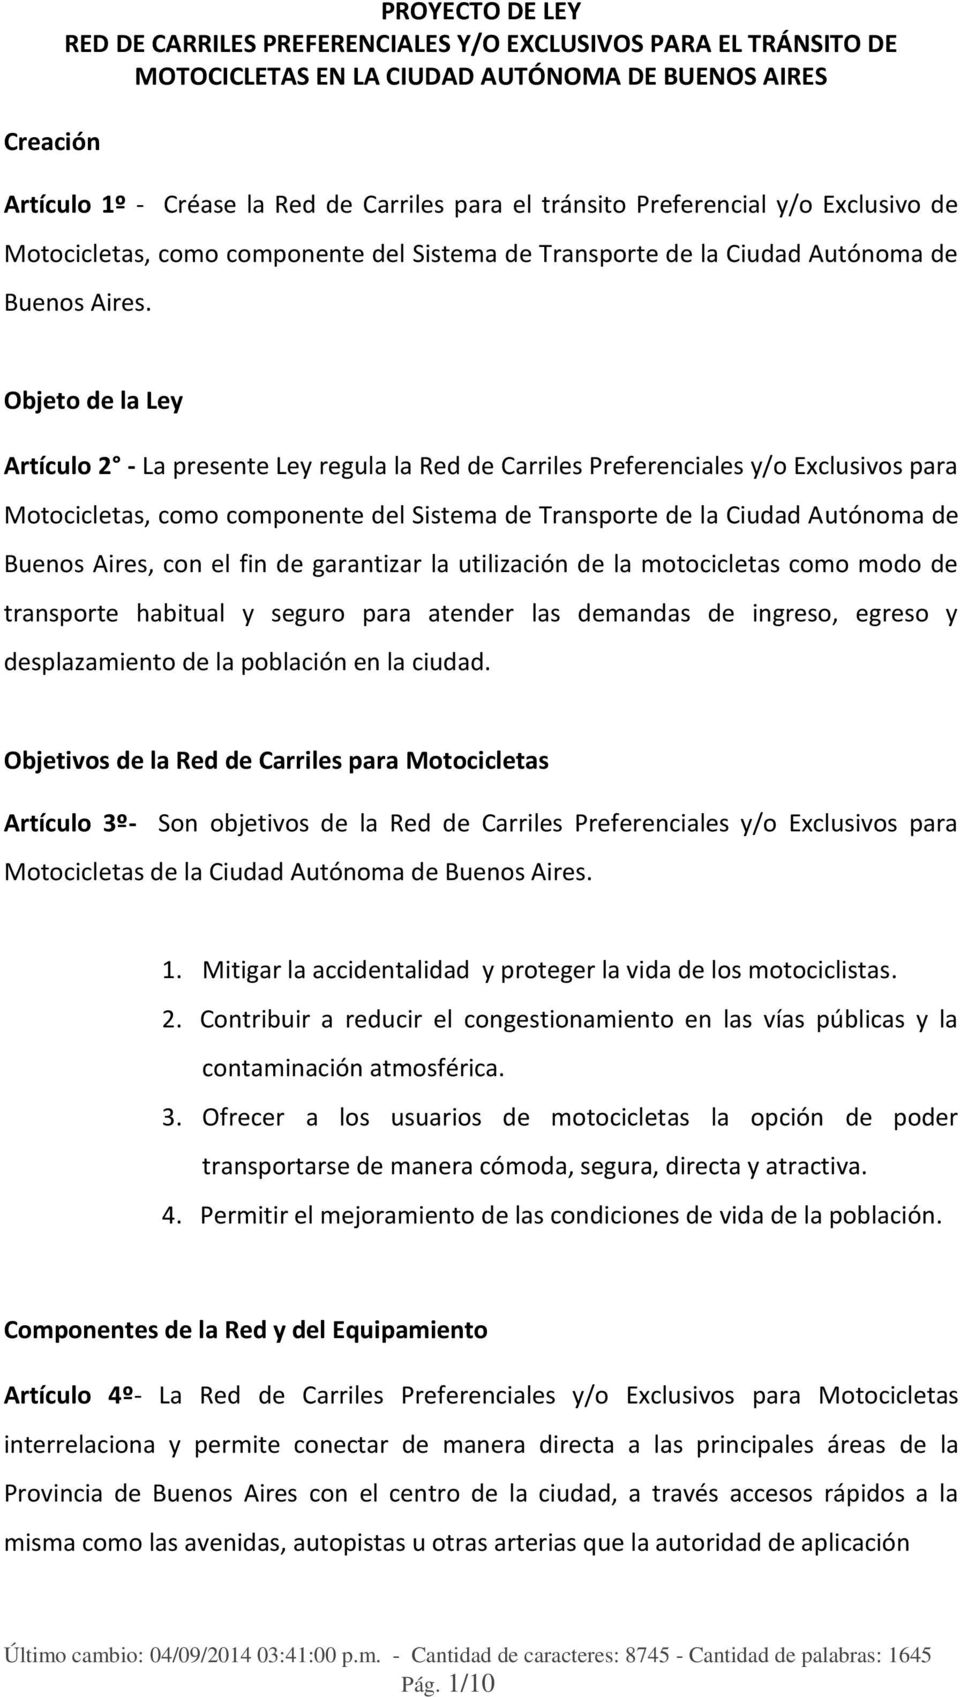 Objeto de la Ley Artículo 2 - La presente Ley regula la Red de Carriles Preferenciales y/o Exclusivos para Motocicletas, como componente del Sistema de Transporte de la Ciudad Autónoma de Buenos